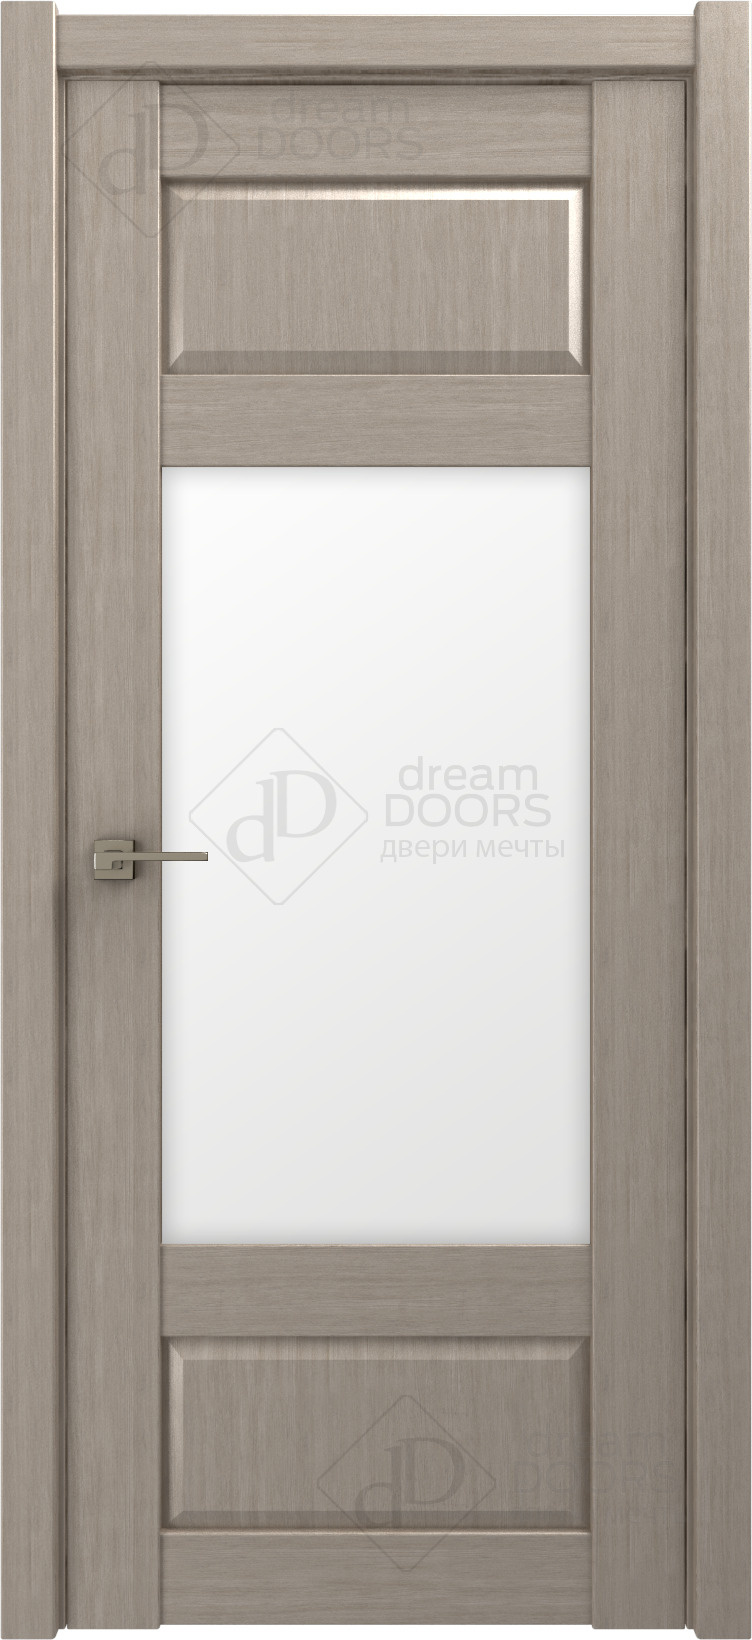 Dream Doors Межкомнатная дверь P16, арт. 18226 - фото №1